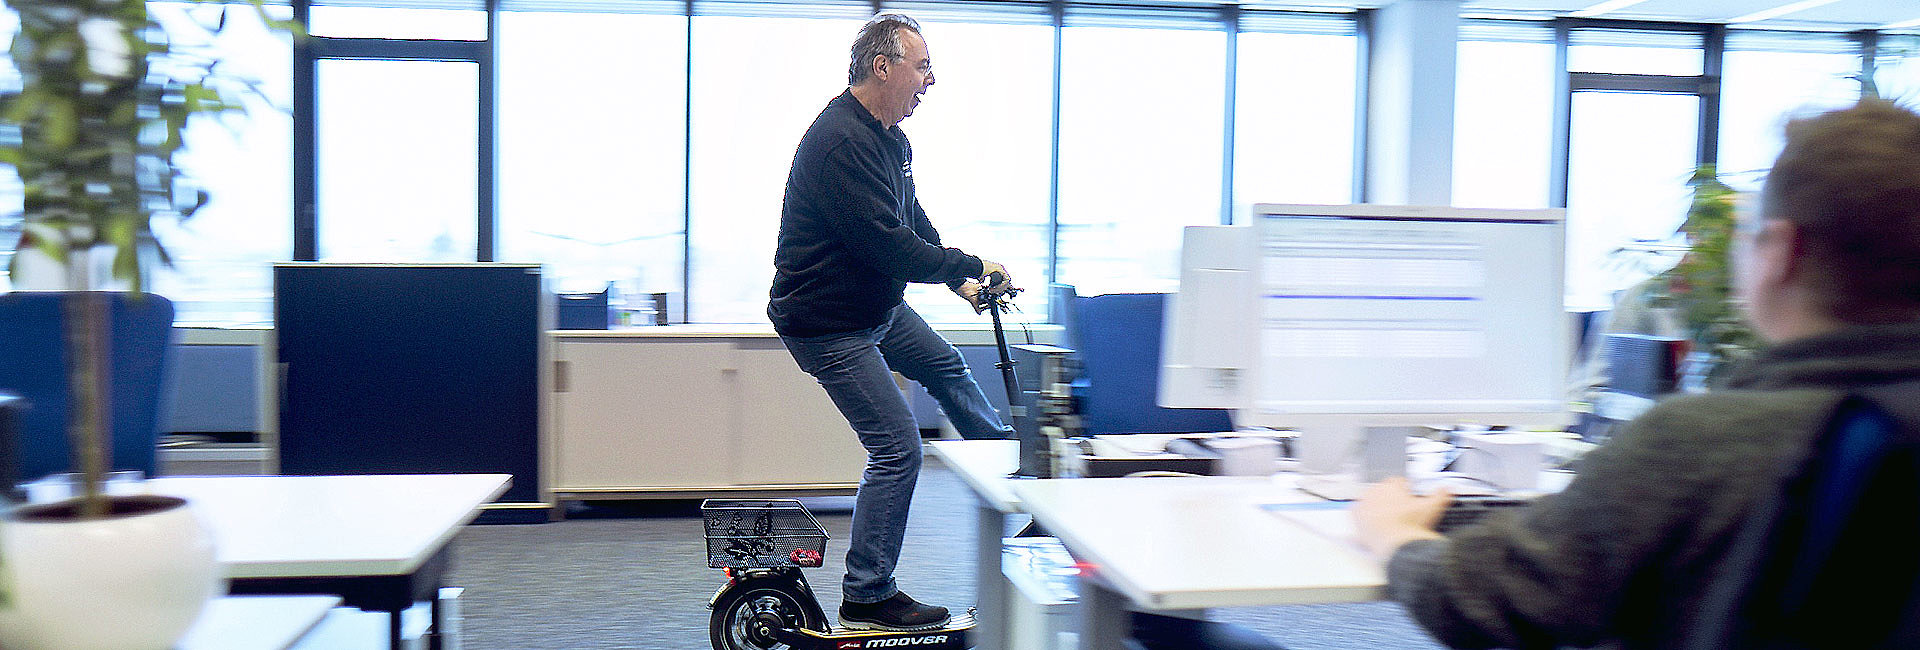 Mann fährt mit E-Scooter durch ein Büro